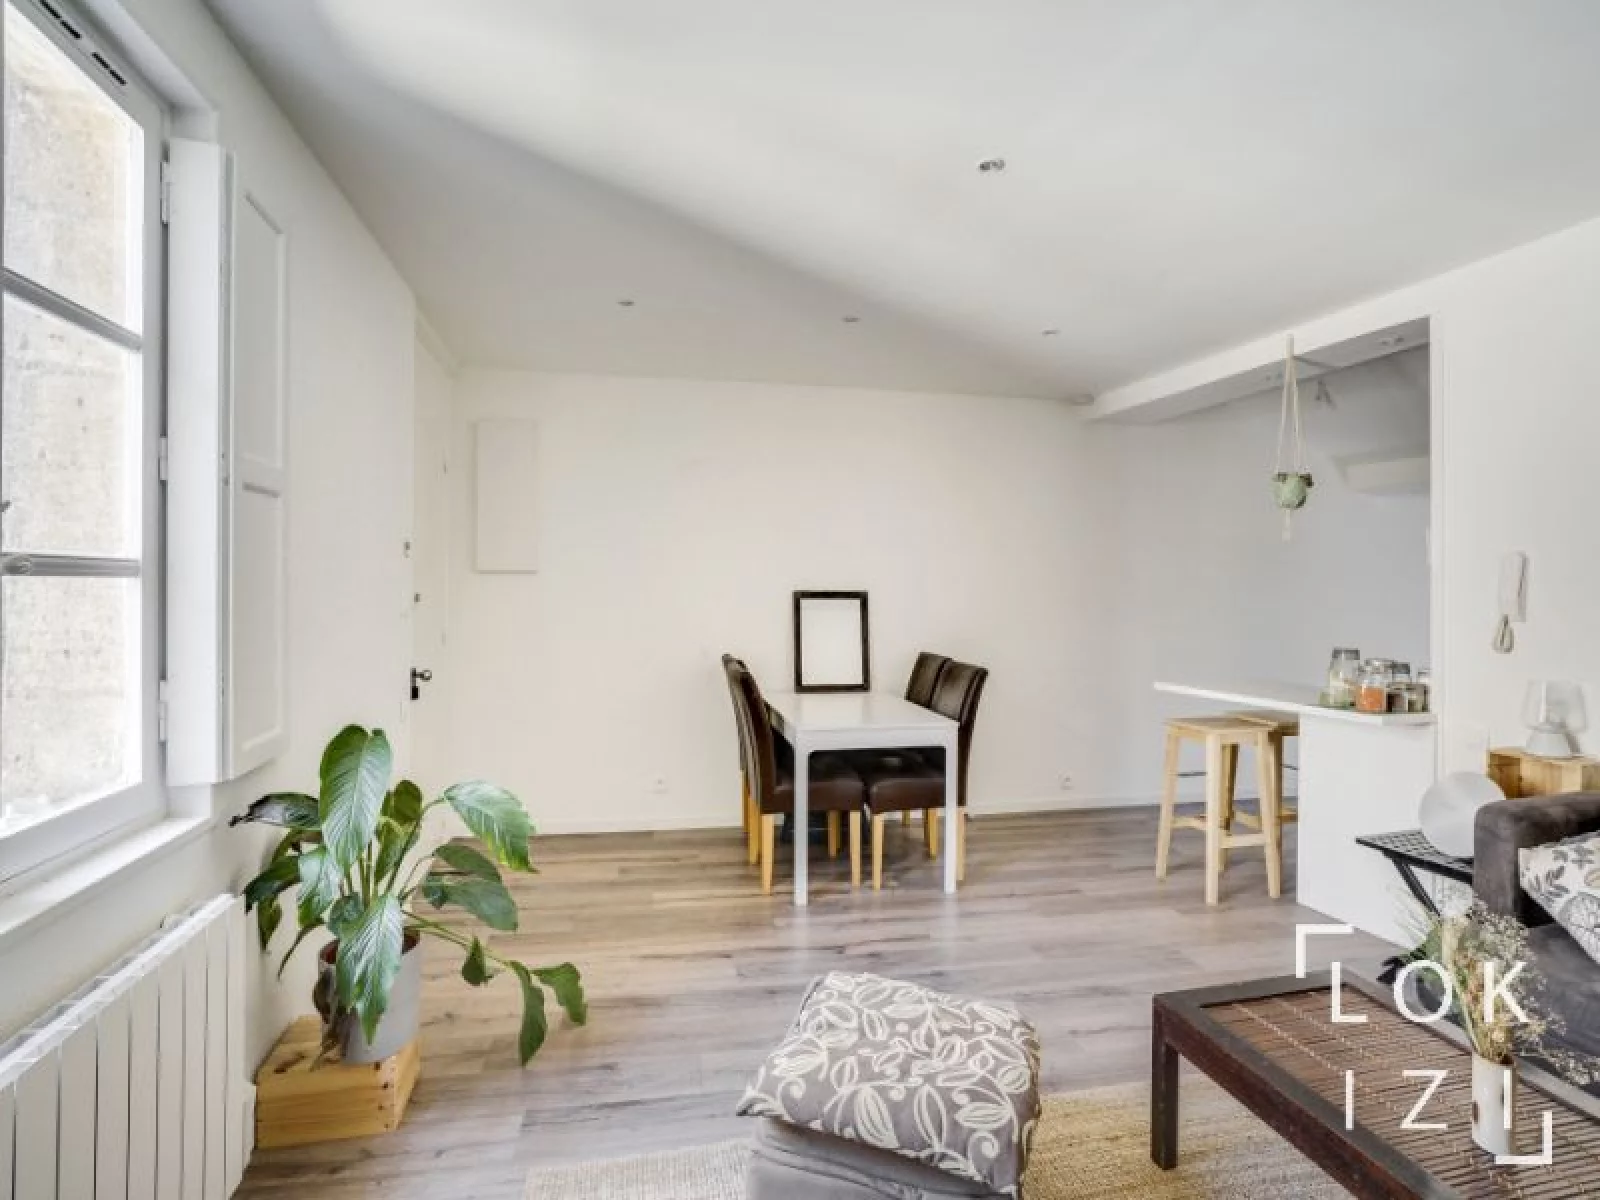 Location appartement meublé 2 pièces de 36m² (Bordeaux centre - Bourse)